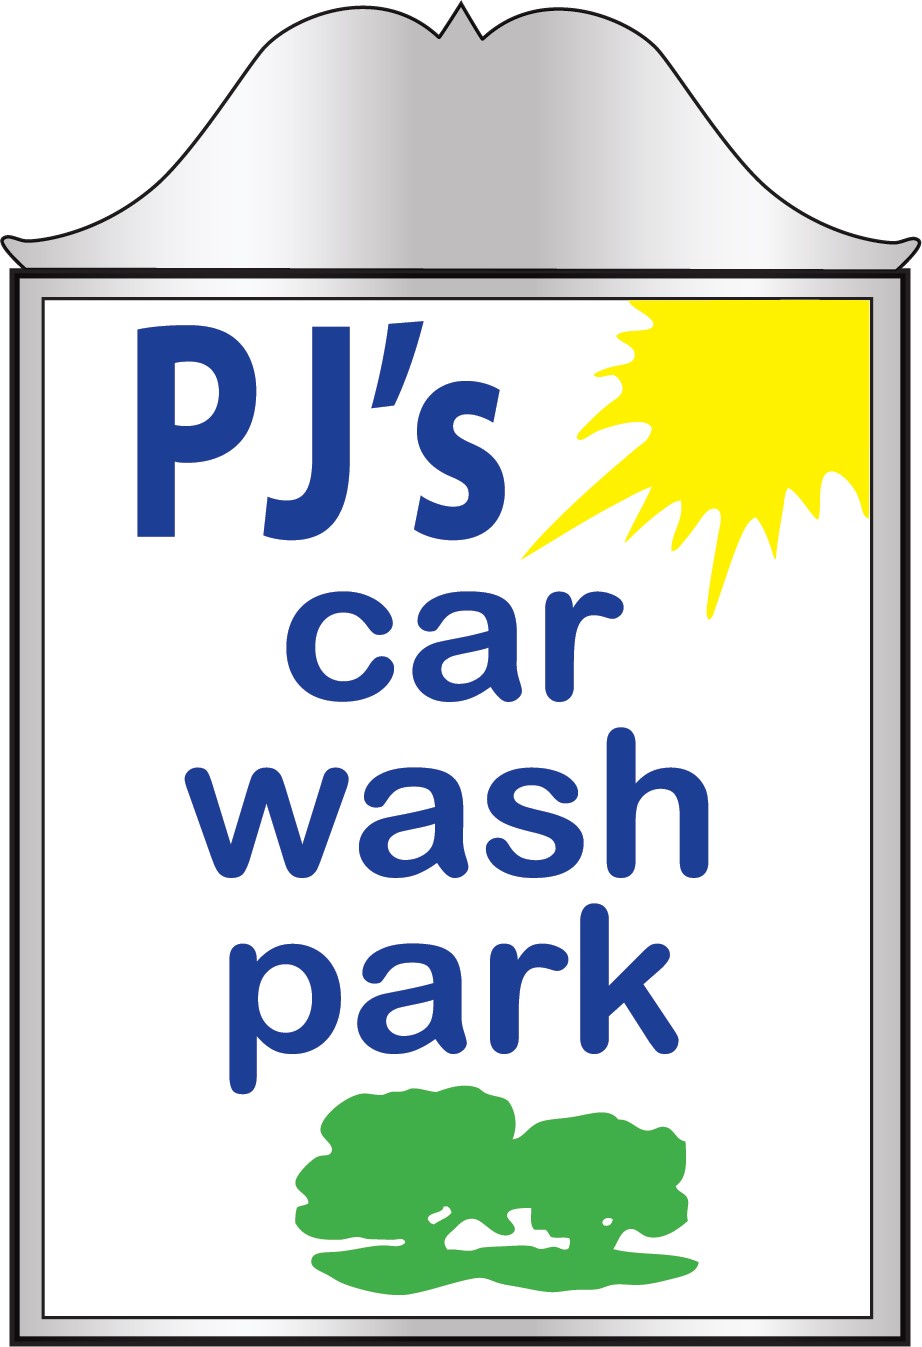 PJ’s Car Wash Park